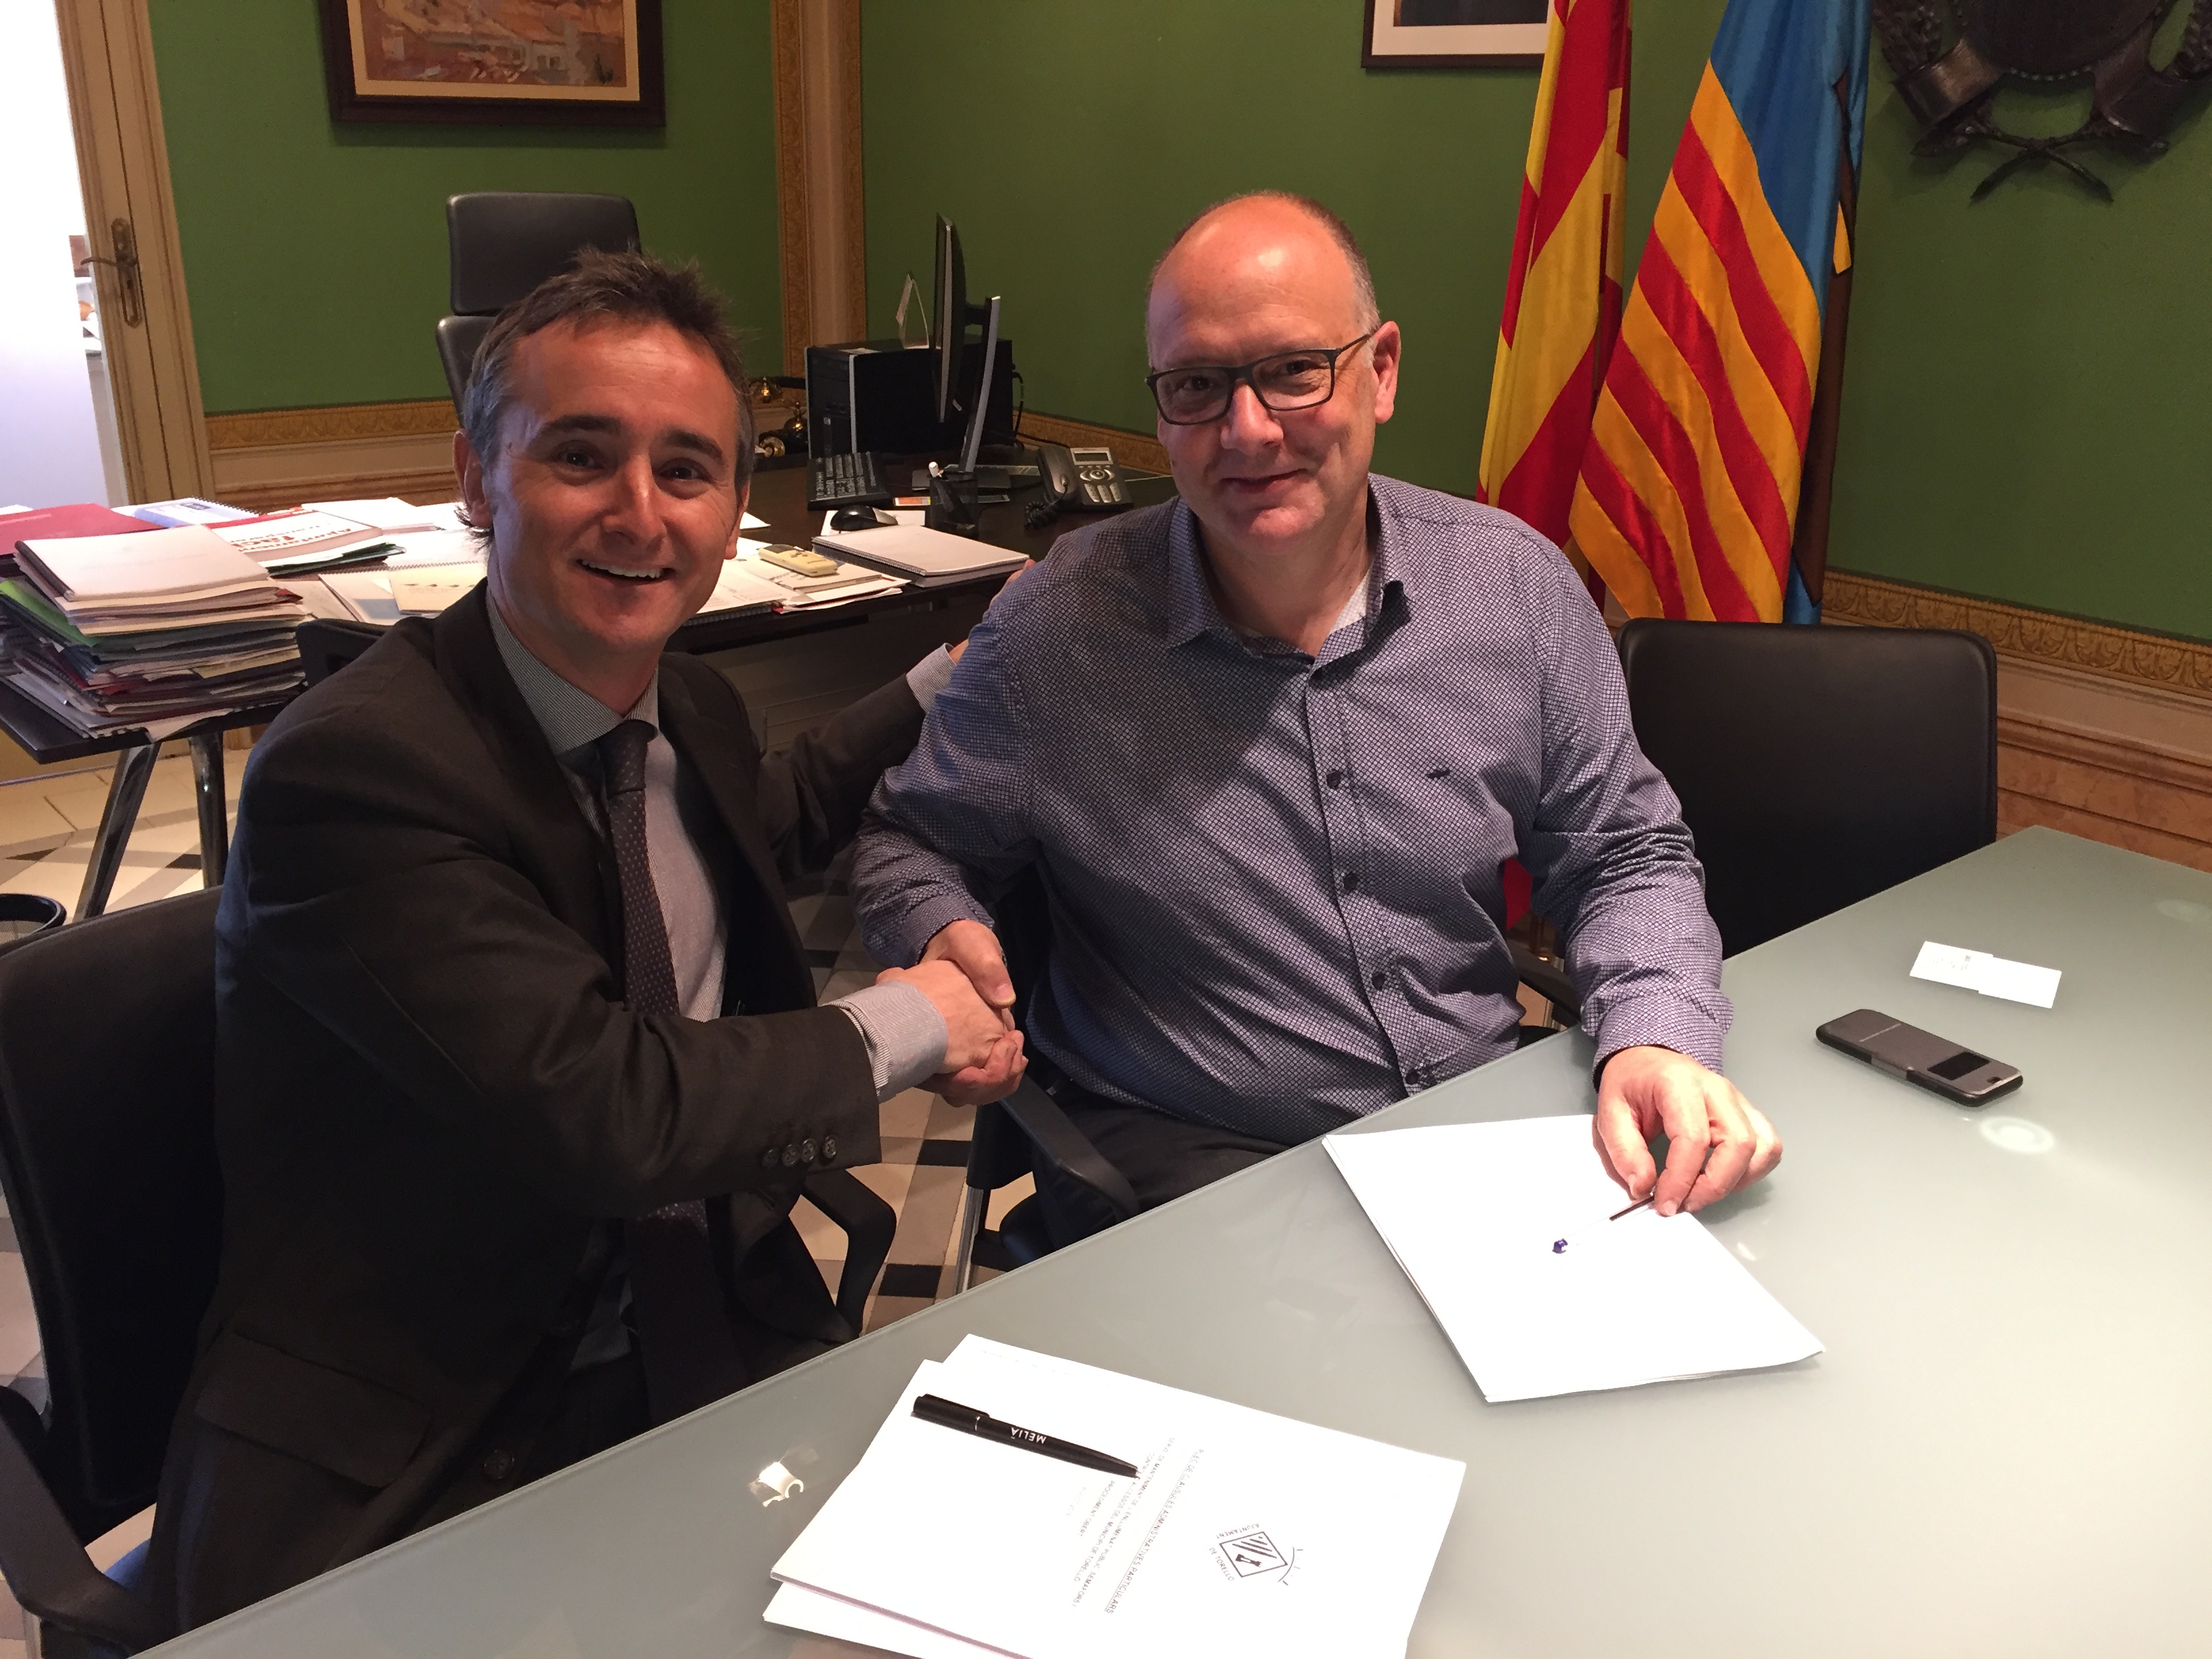 L'Ajuntament de Torelló signa un contracte amb l’empresa SECE per al servei de conservació i manteniment de l’enllumenat públic, instal·lacions semafòriques i control d’accessos